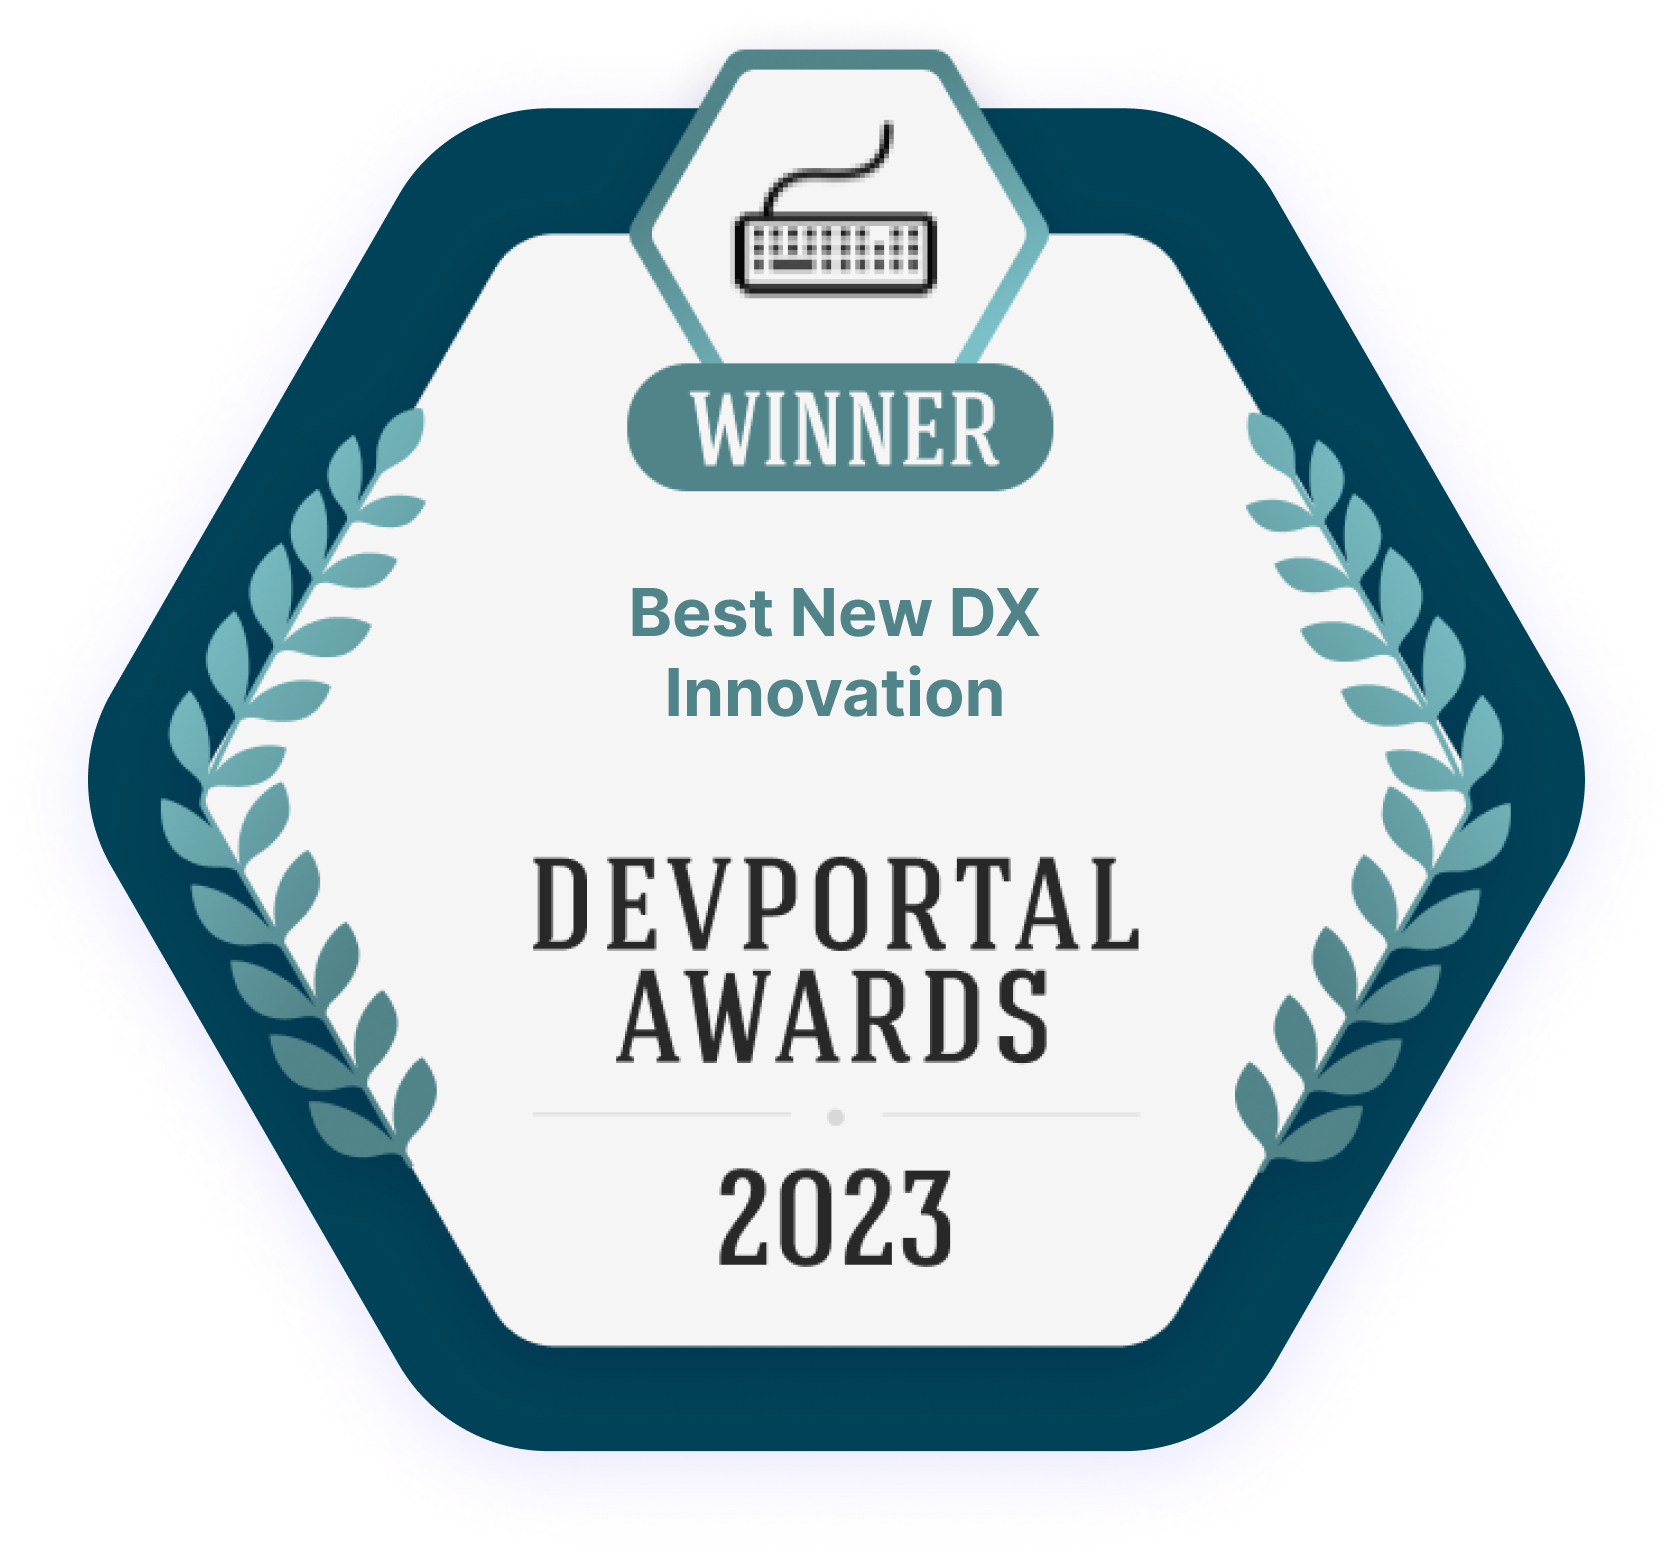 Winner: DevPortal Awards